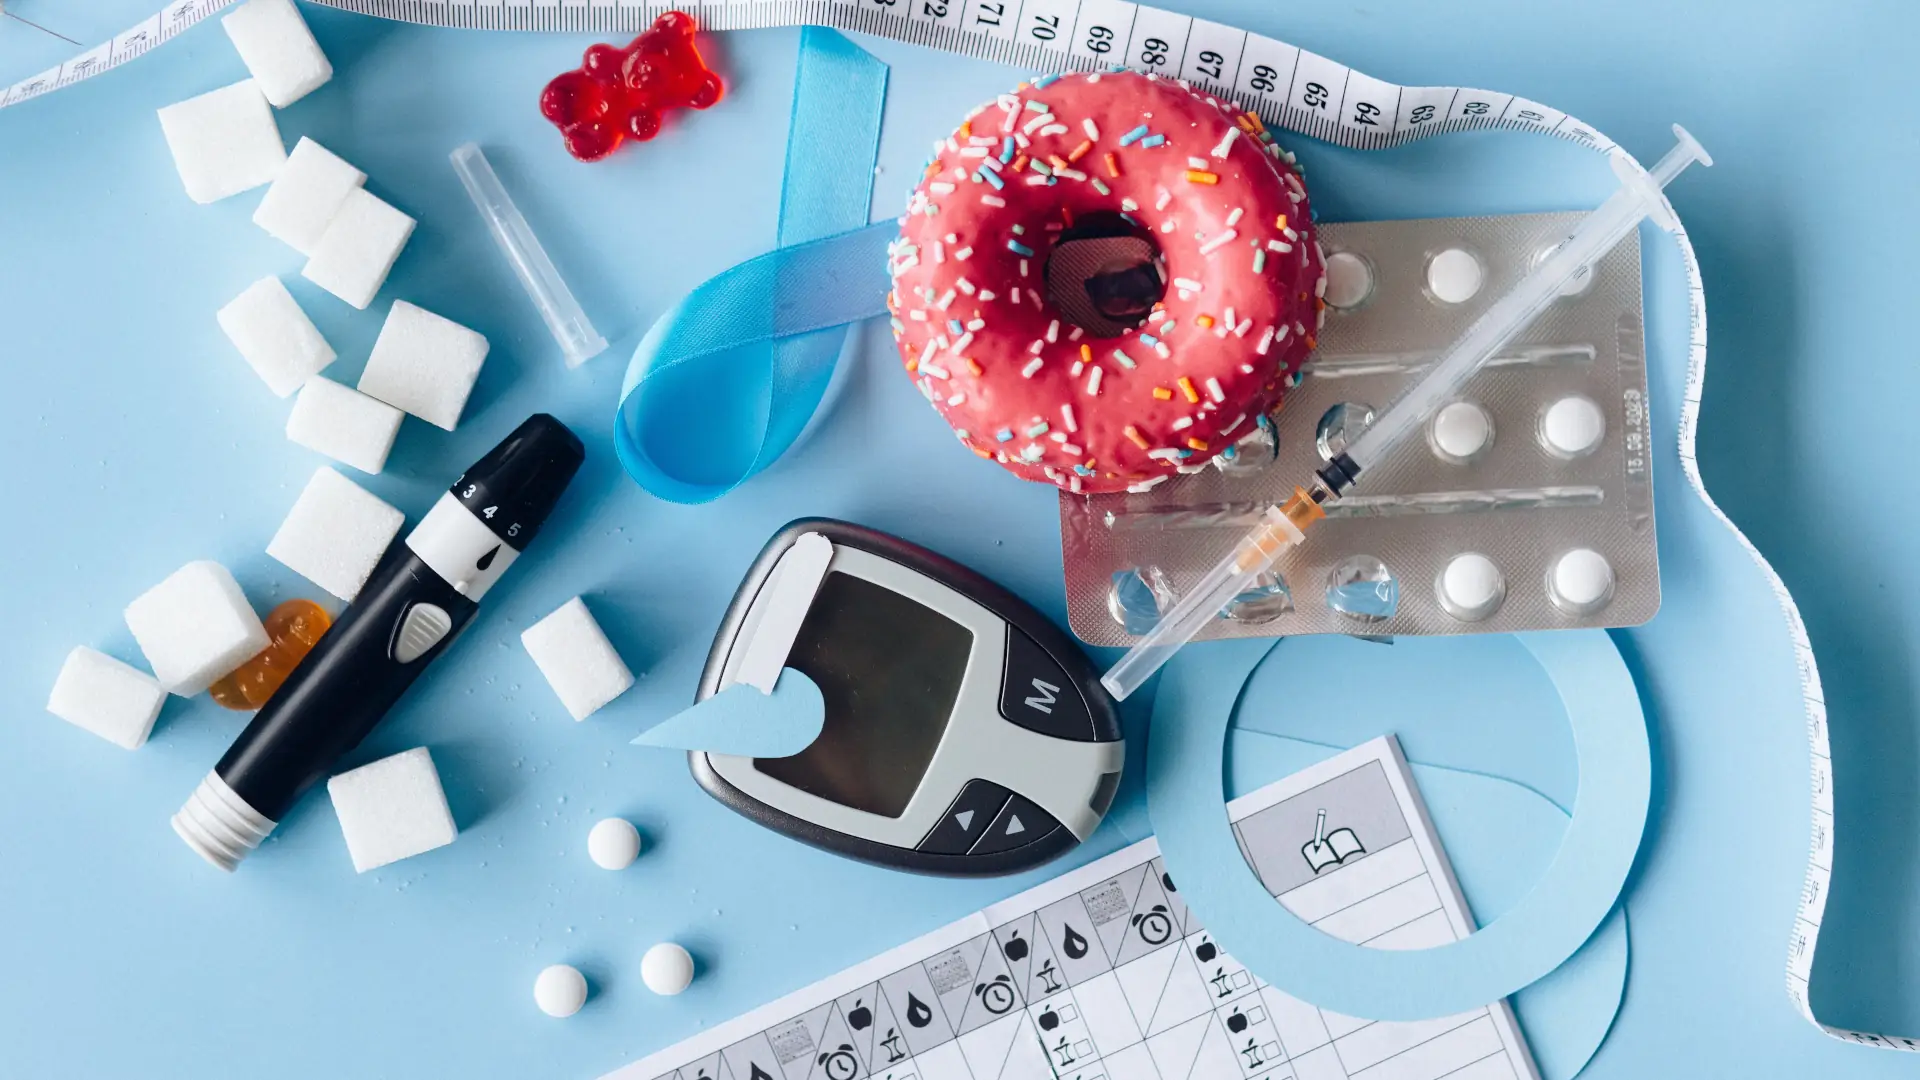 myfooddoctor  Typ-2-Diabetes - Neues zum Weltdiabetestag